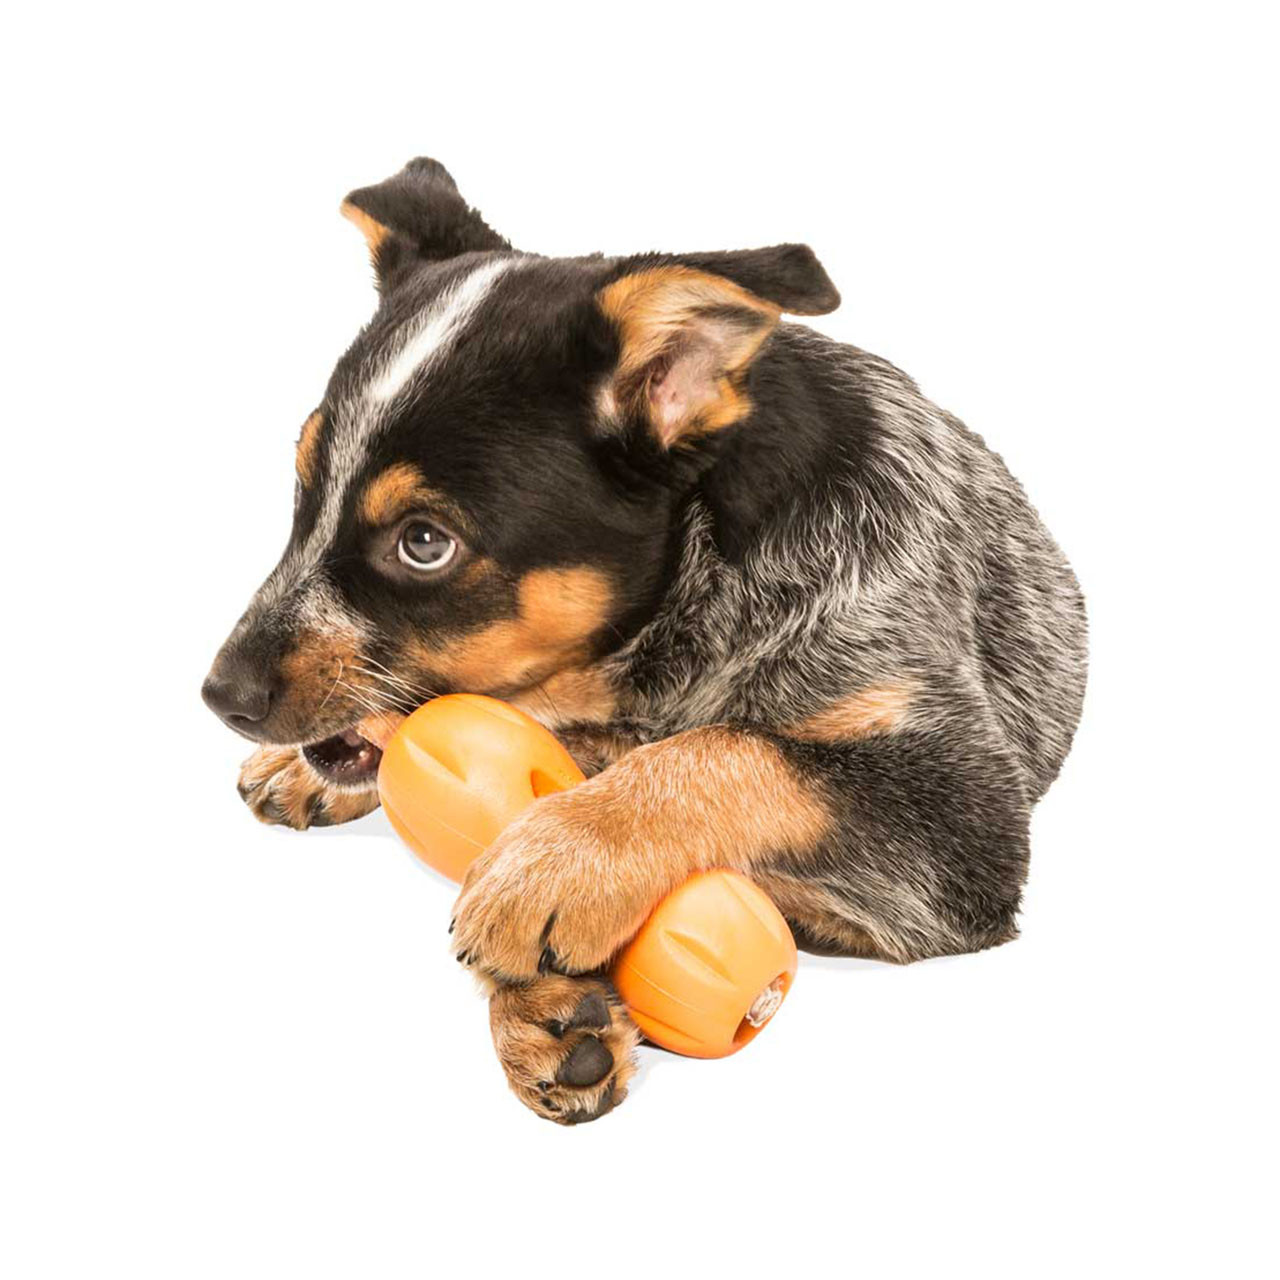 West Paw Tizzi Dog Toy - Large - Tangerine